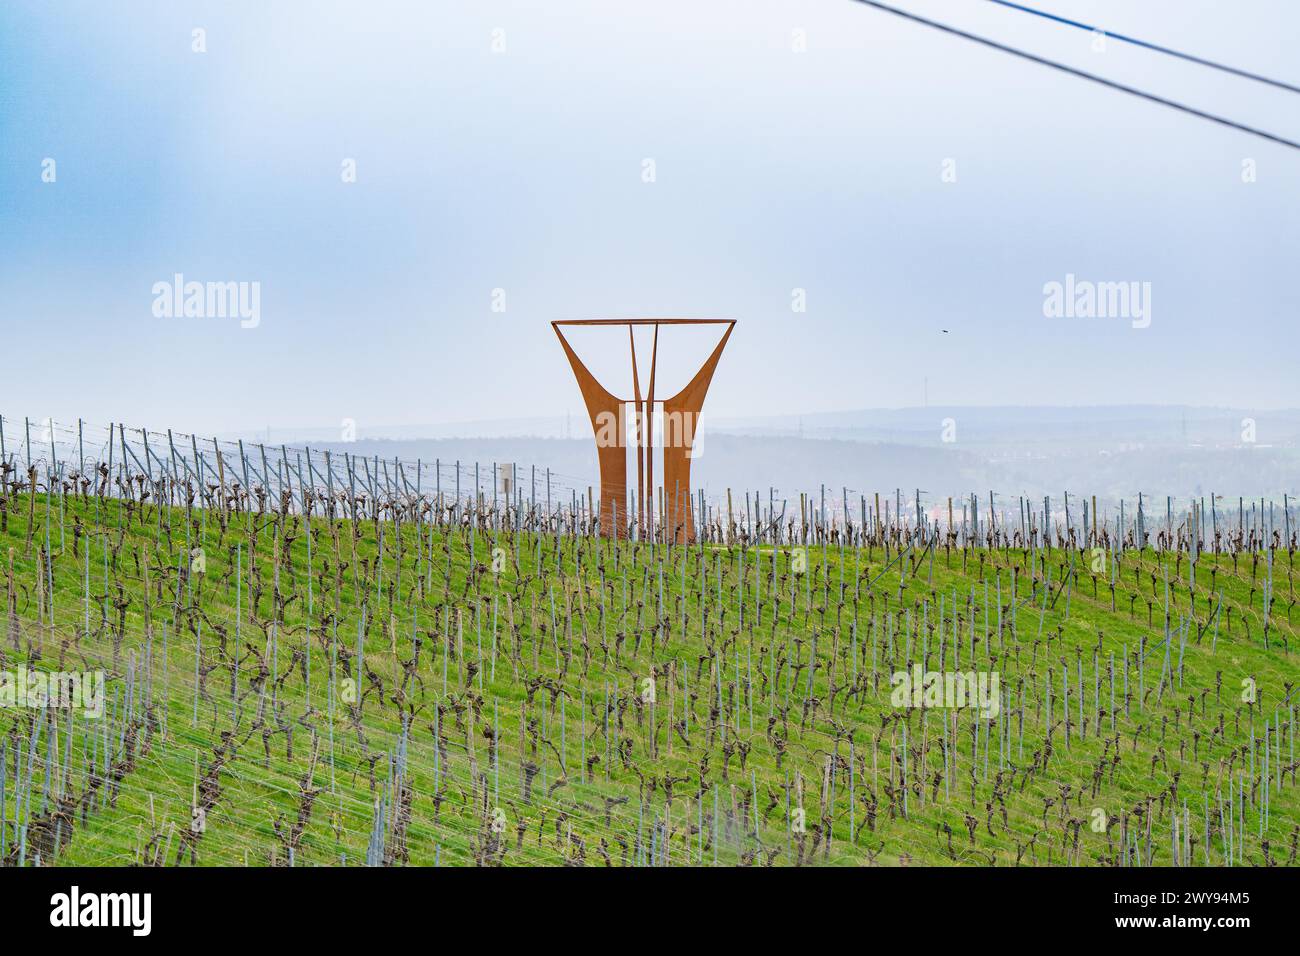 Vaste paysage viticole avec une installation artistique saisissante sous un ciel nuageux, Jesus Grace Chruch, Weitblickweg, randonnée de Pâques, Hohenhaslach, Allemagne Banque D'Images